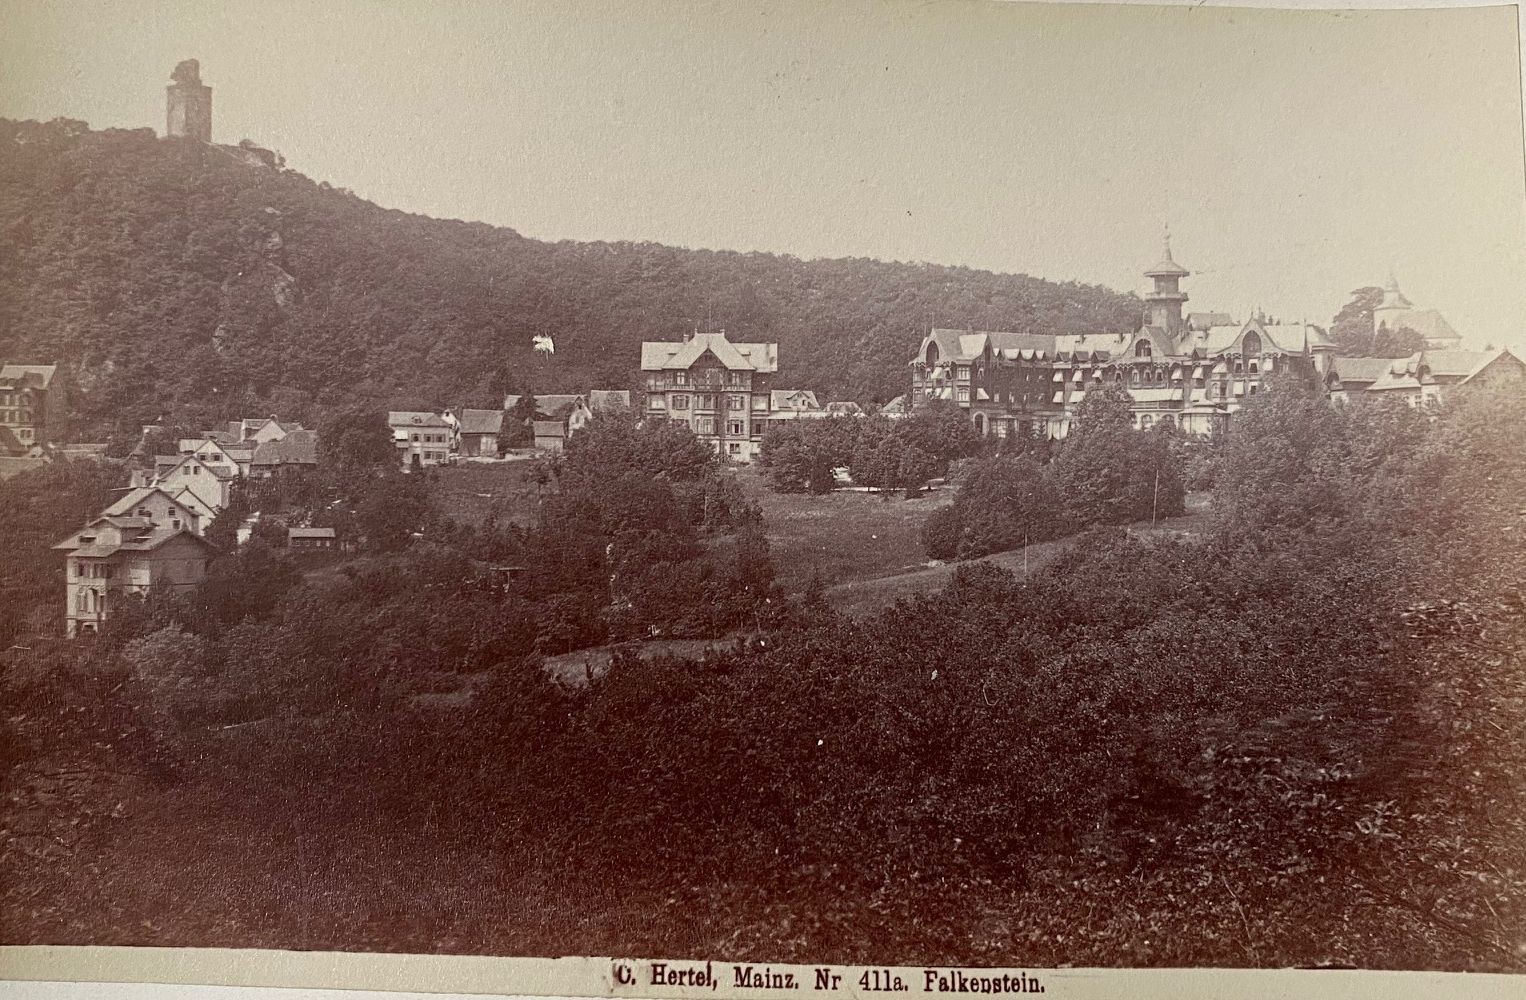 Fotografie, Carl Hertel No. 411a, Falkenstein, ca. 1885 (Taunus-Rhein-Main - Regionalgeschichtliche Sammlung Dr. Stefan Naas CC BY-NC-SA)